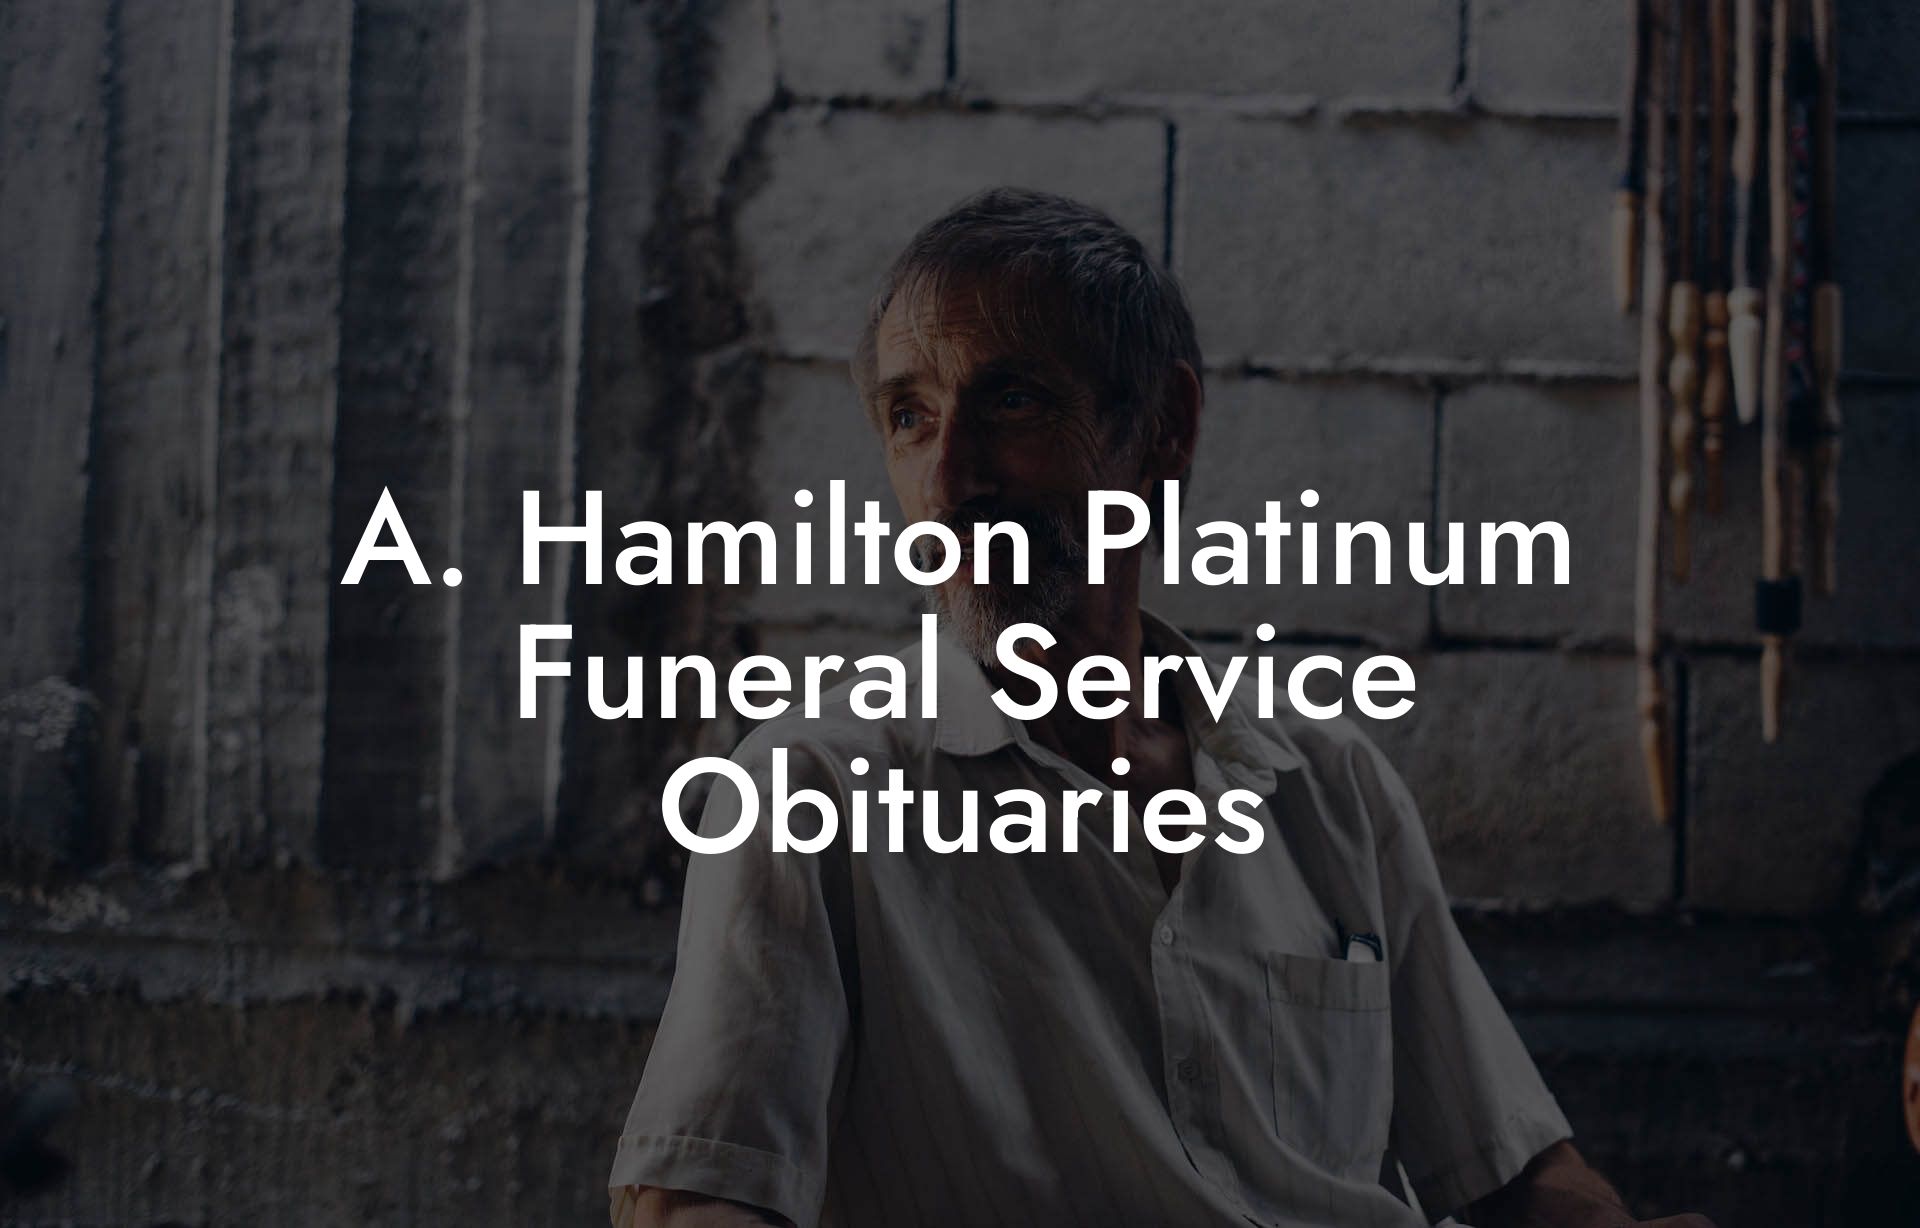 A. Hamilton Platinum Funeral Service Obituaries